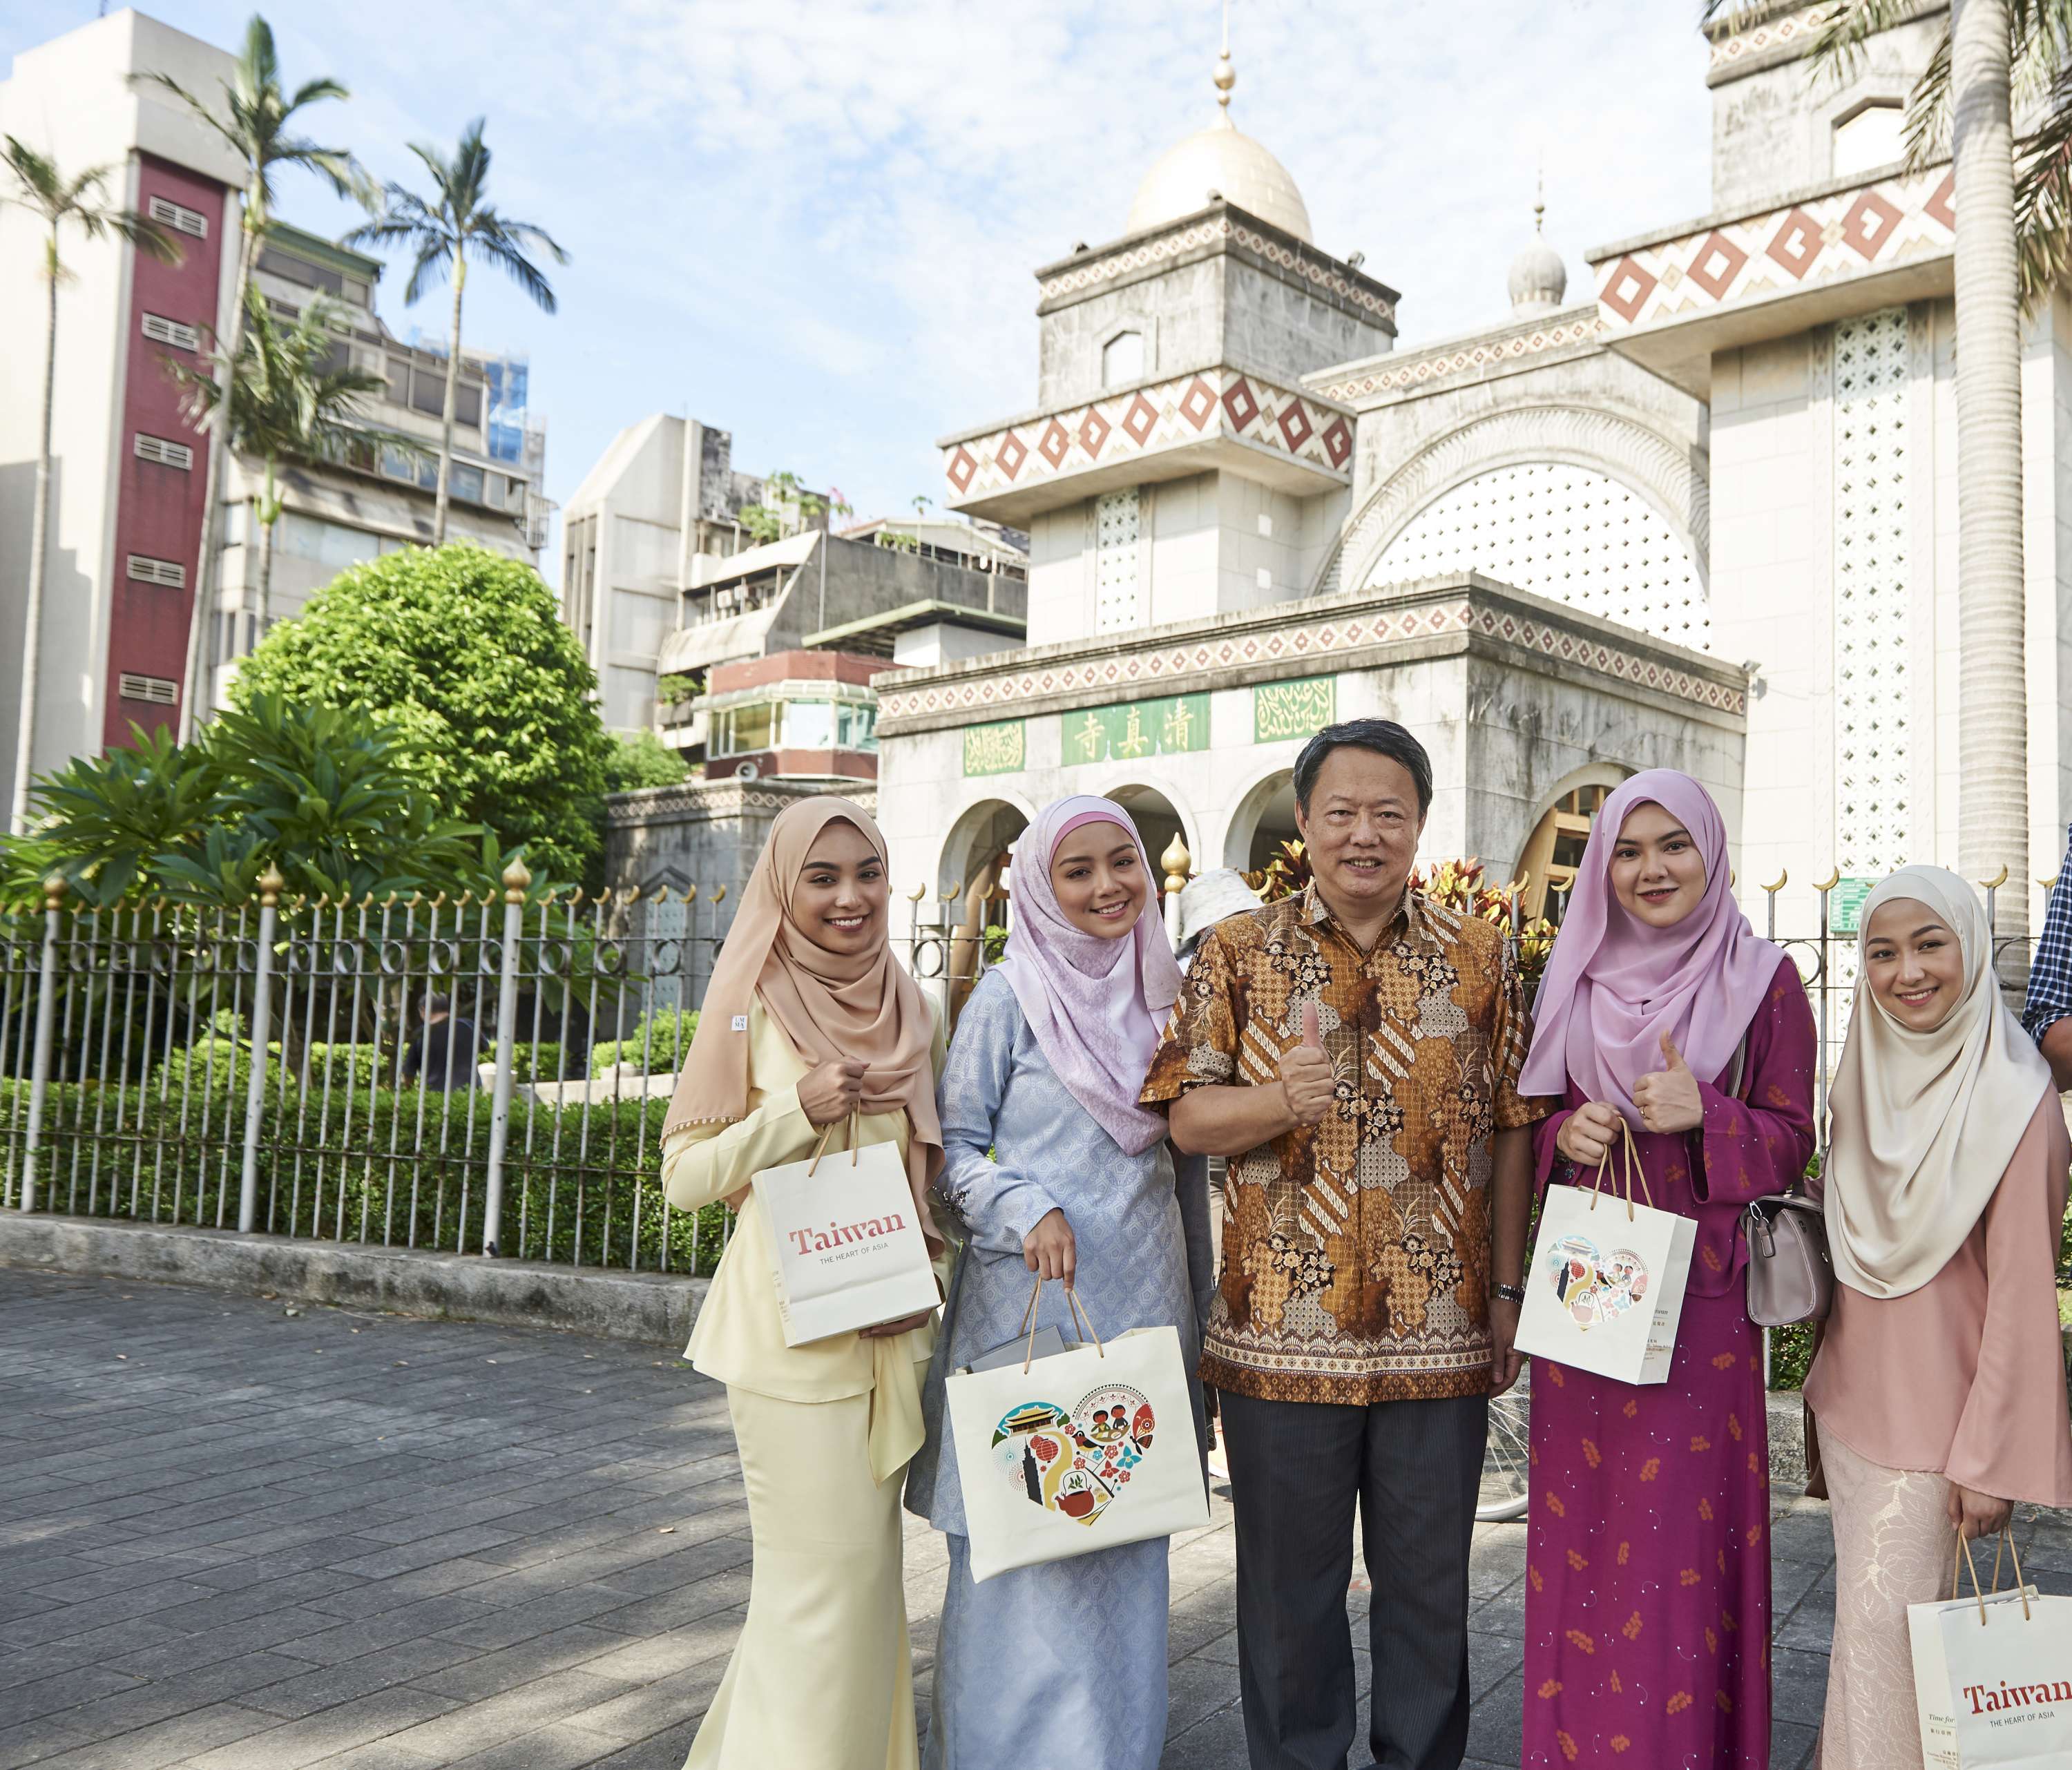 Kementerian Transportasi pada tahun 2018, mengundang aktris Muslim Malaysia Mira Filzah sebagai juru bicara bagi wisatawan Malaysia dan Brunei di Taiwan.